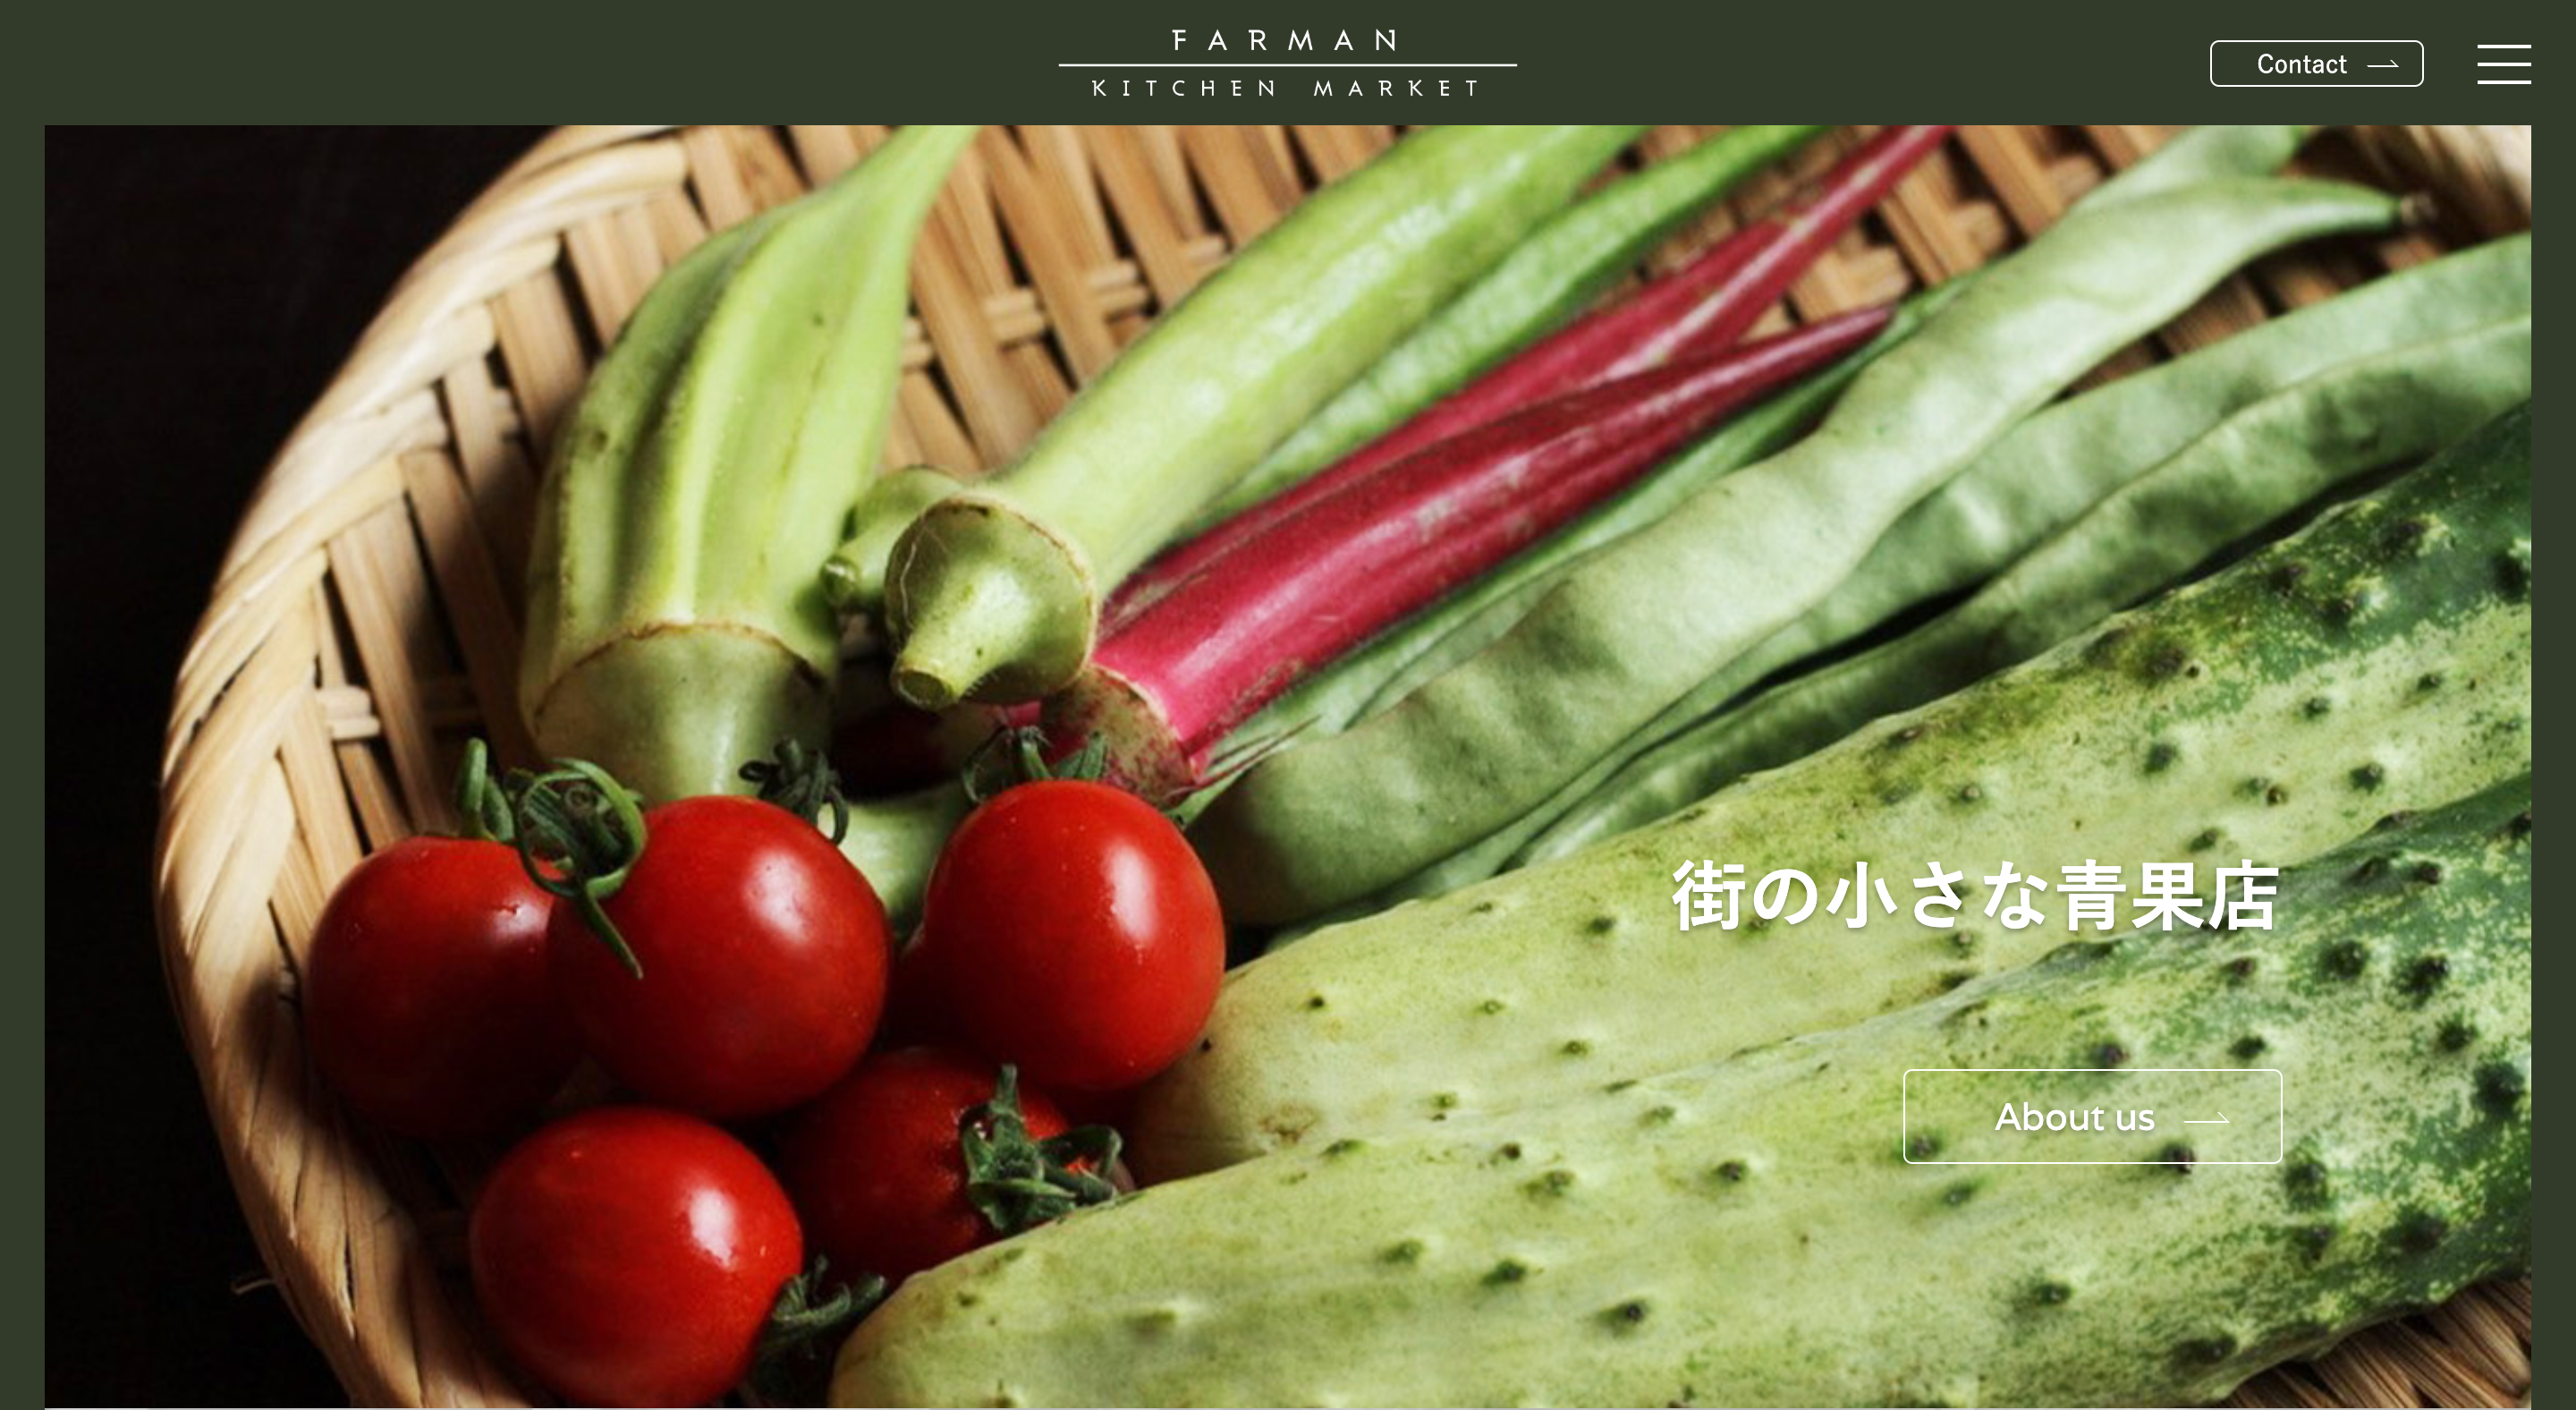 FARMAN KITCHEN MARKETのWEBサイトのTOP画面